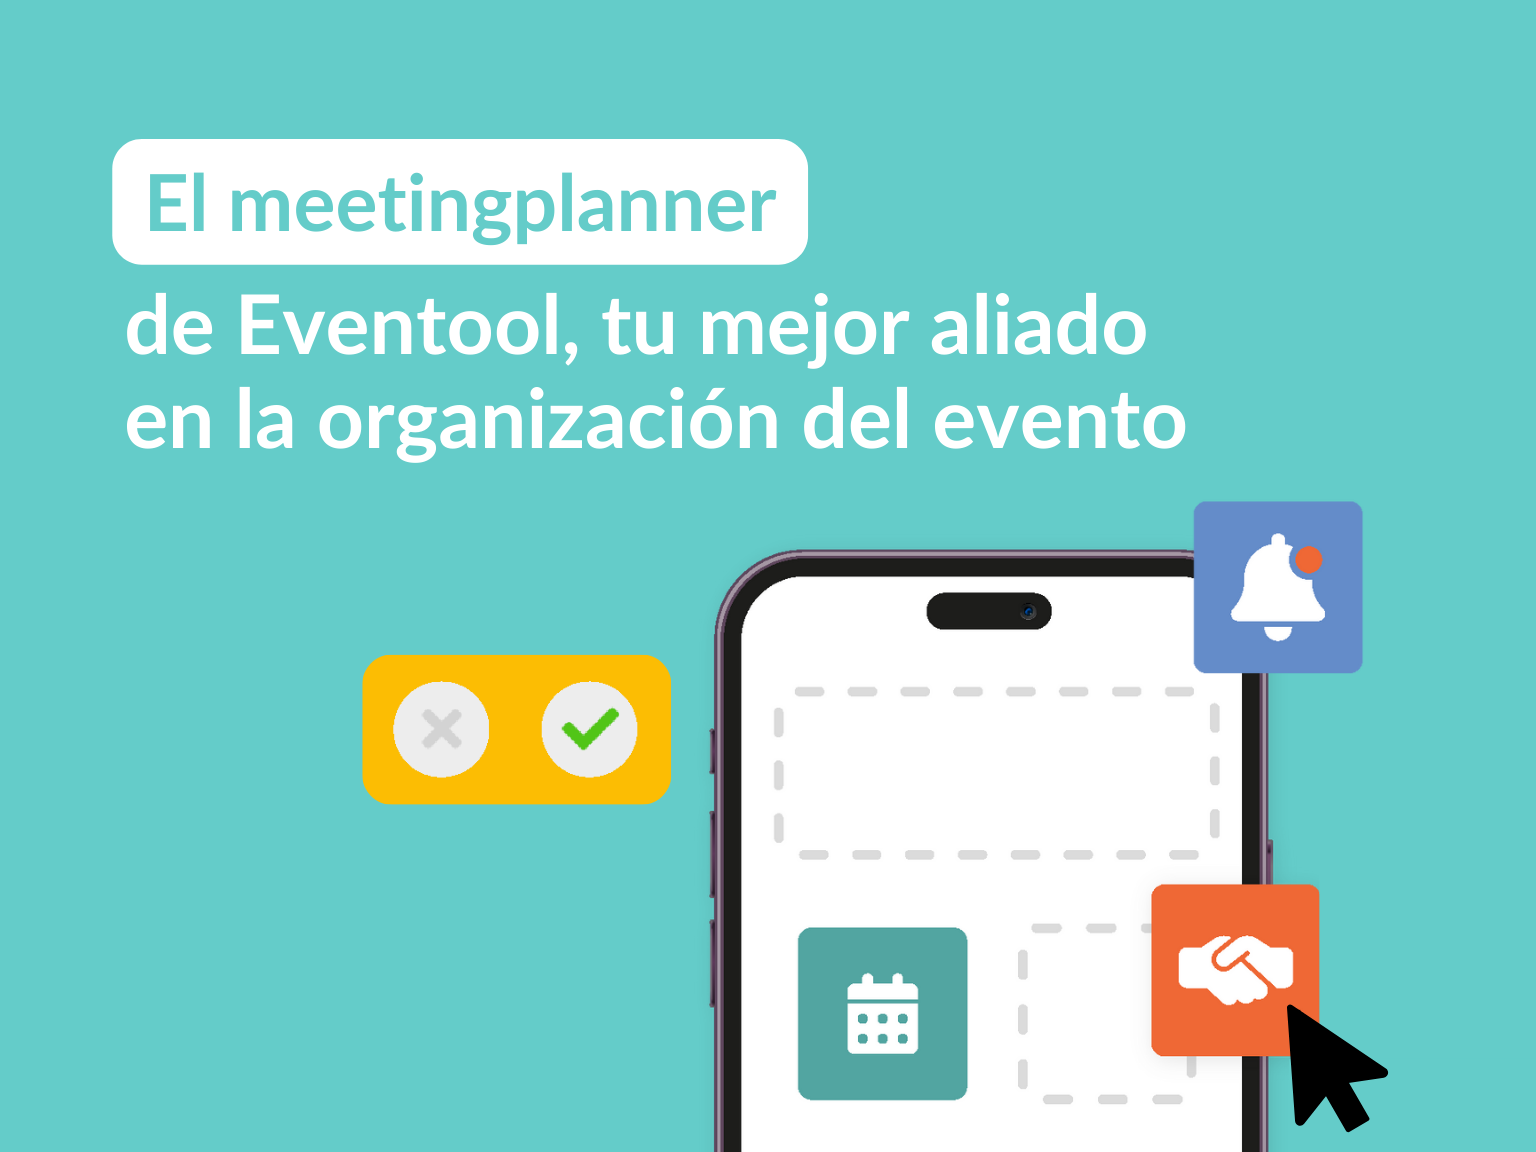 Meetingplanner eventool